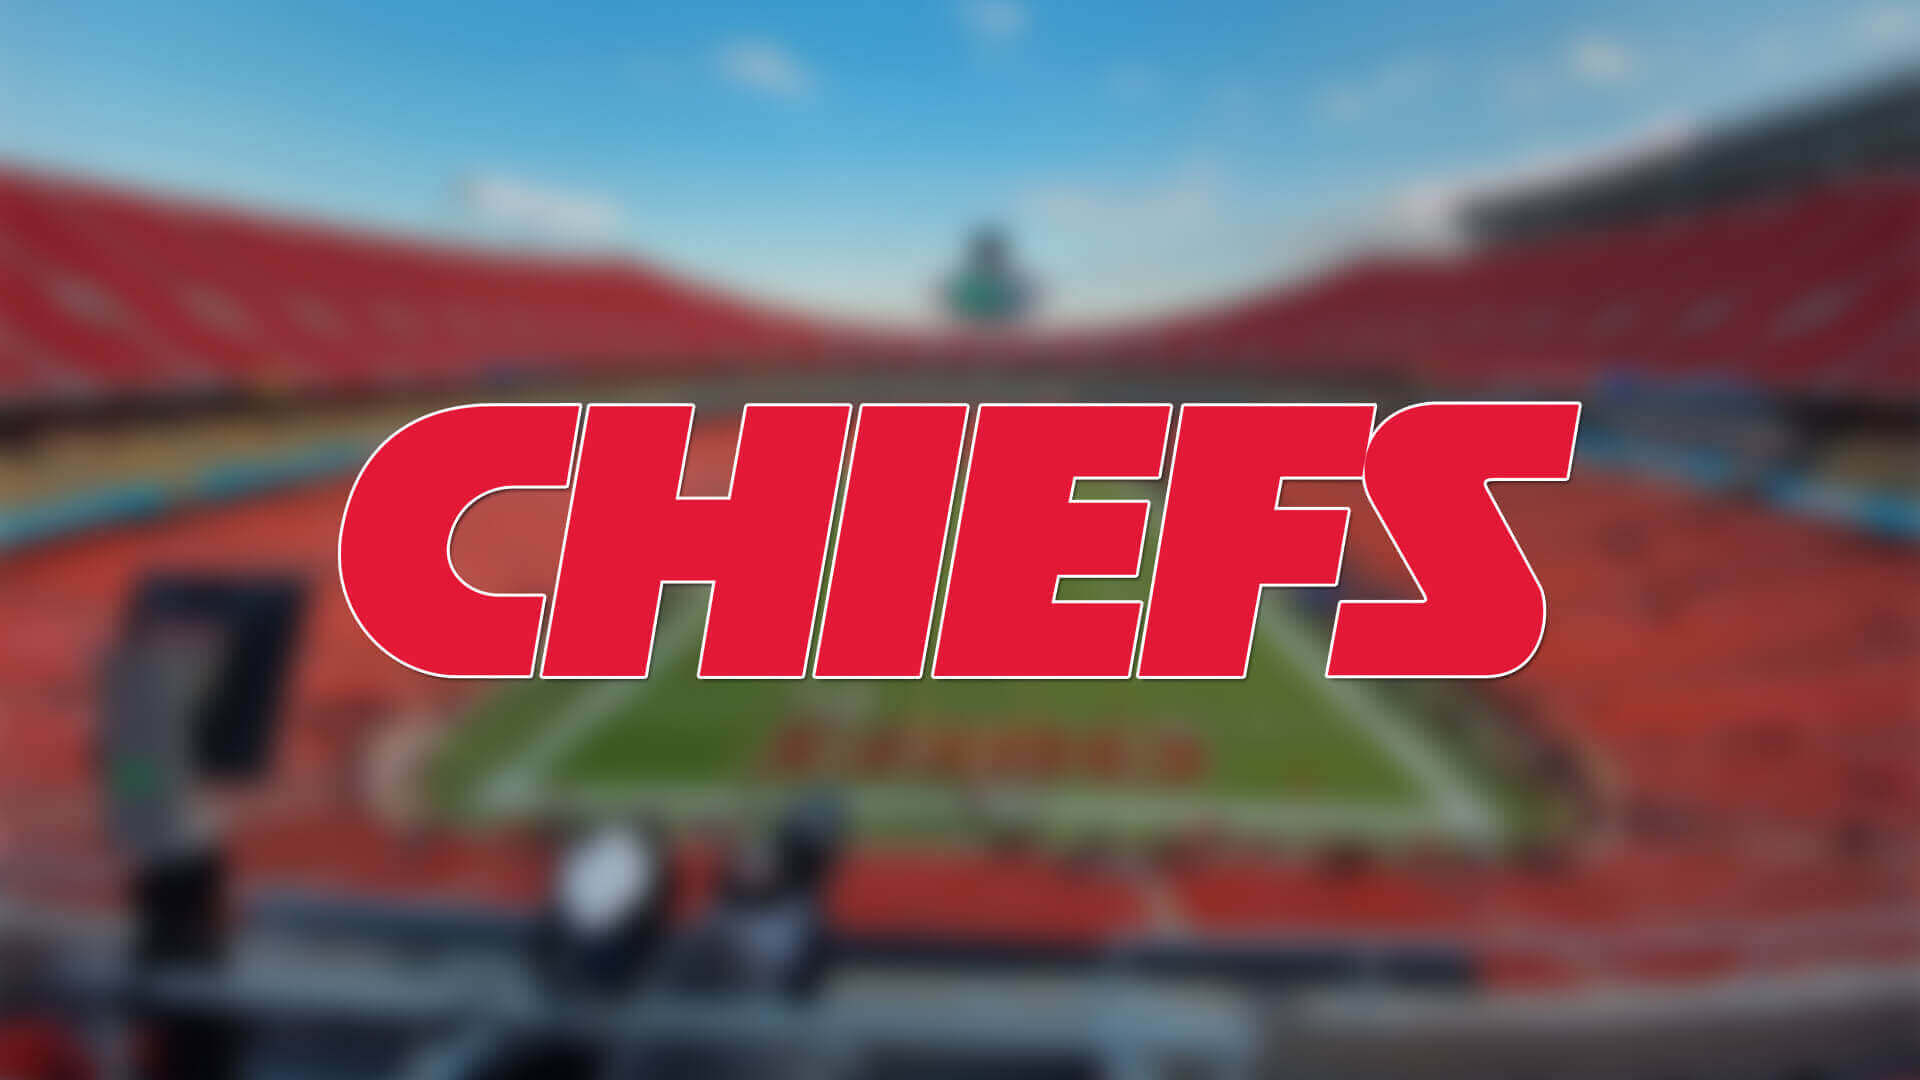 Chiefs 2 Oyuncusunu Covid-19 Listesine Aldı | Korumalı Futbol Türkiye